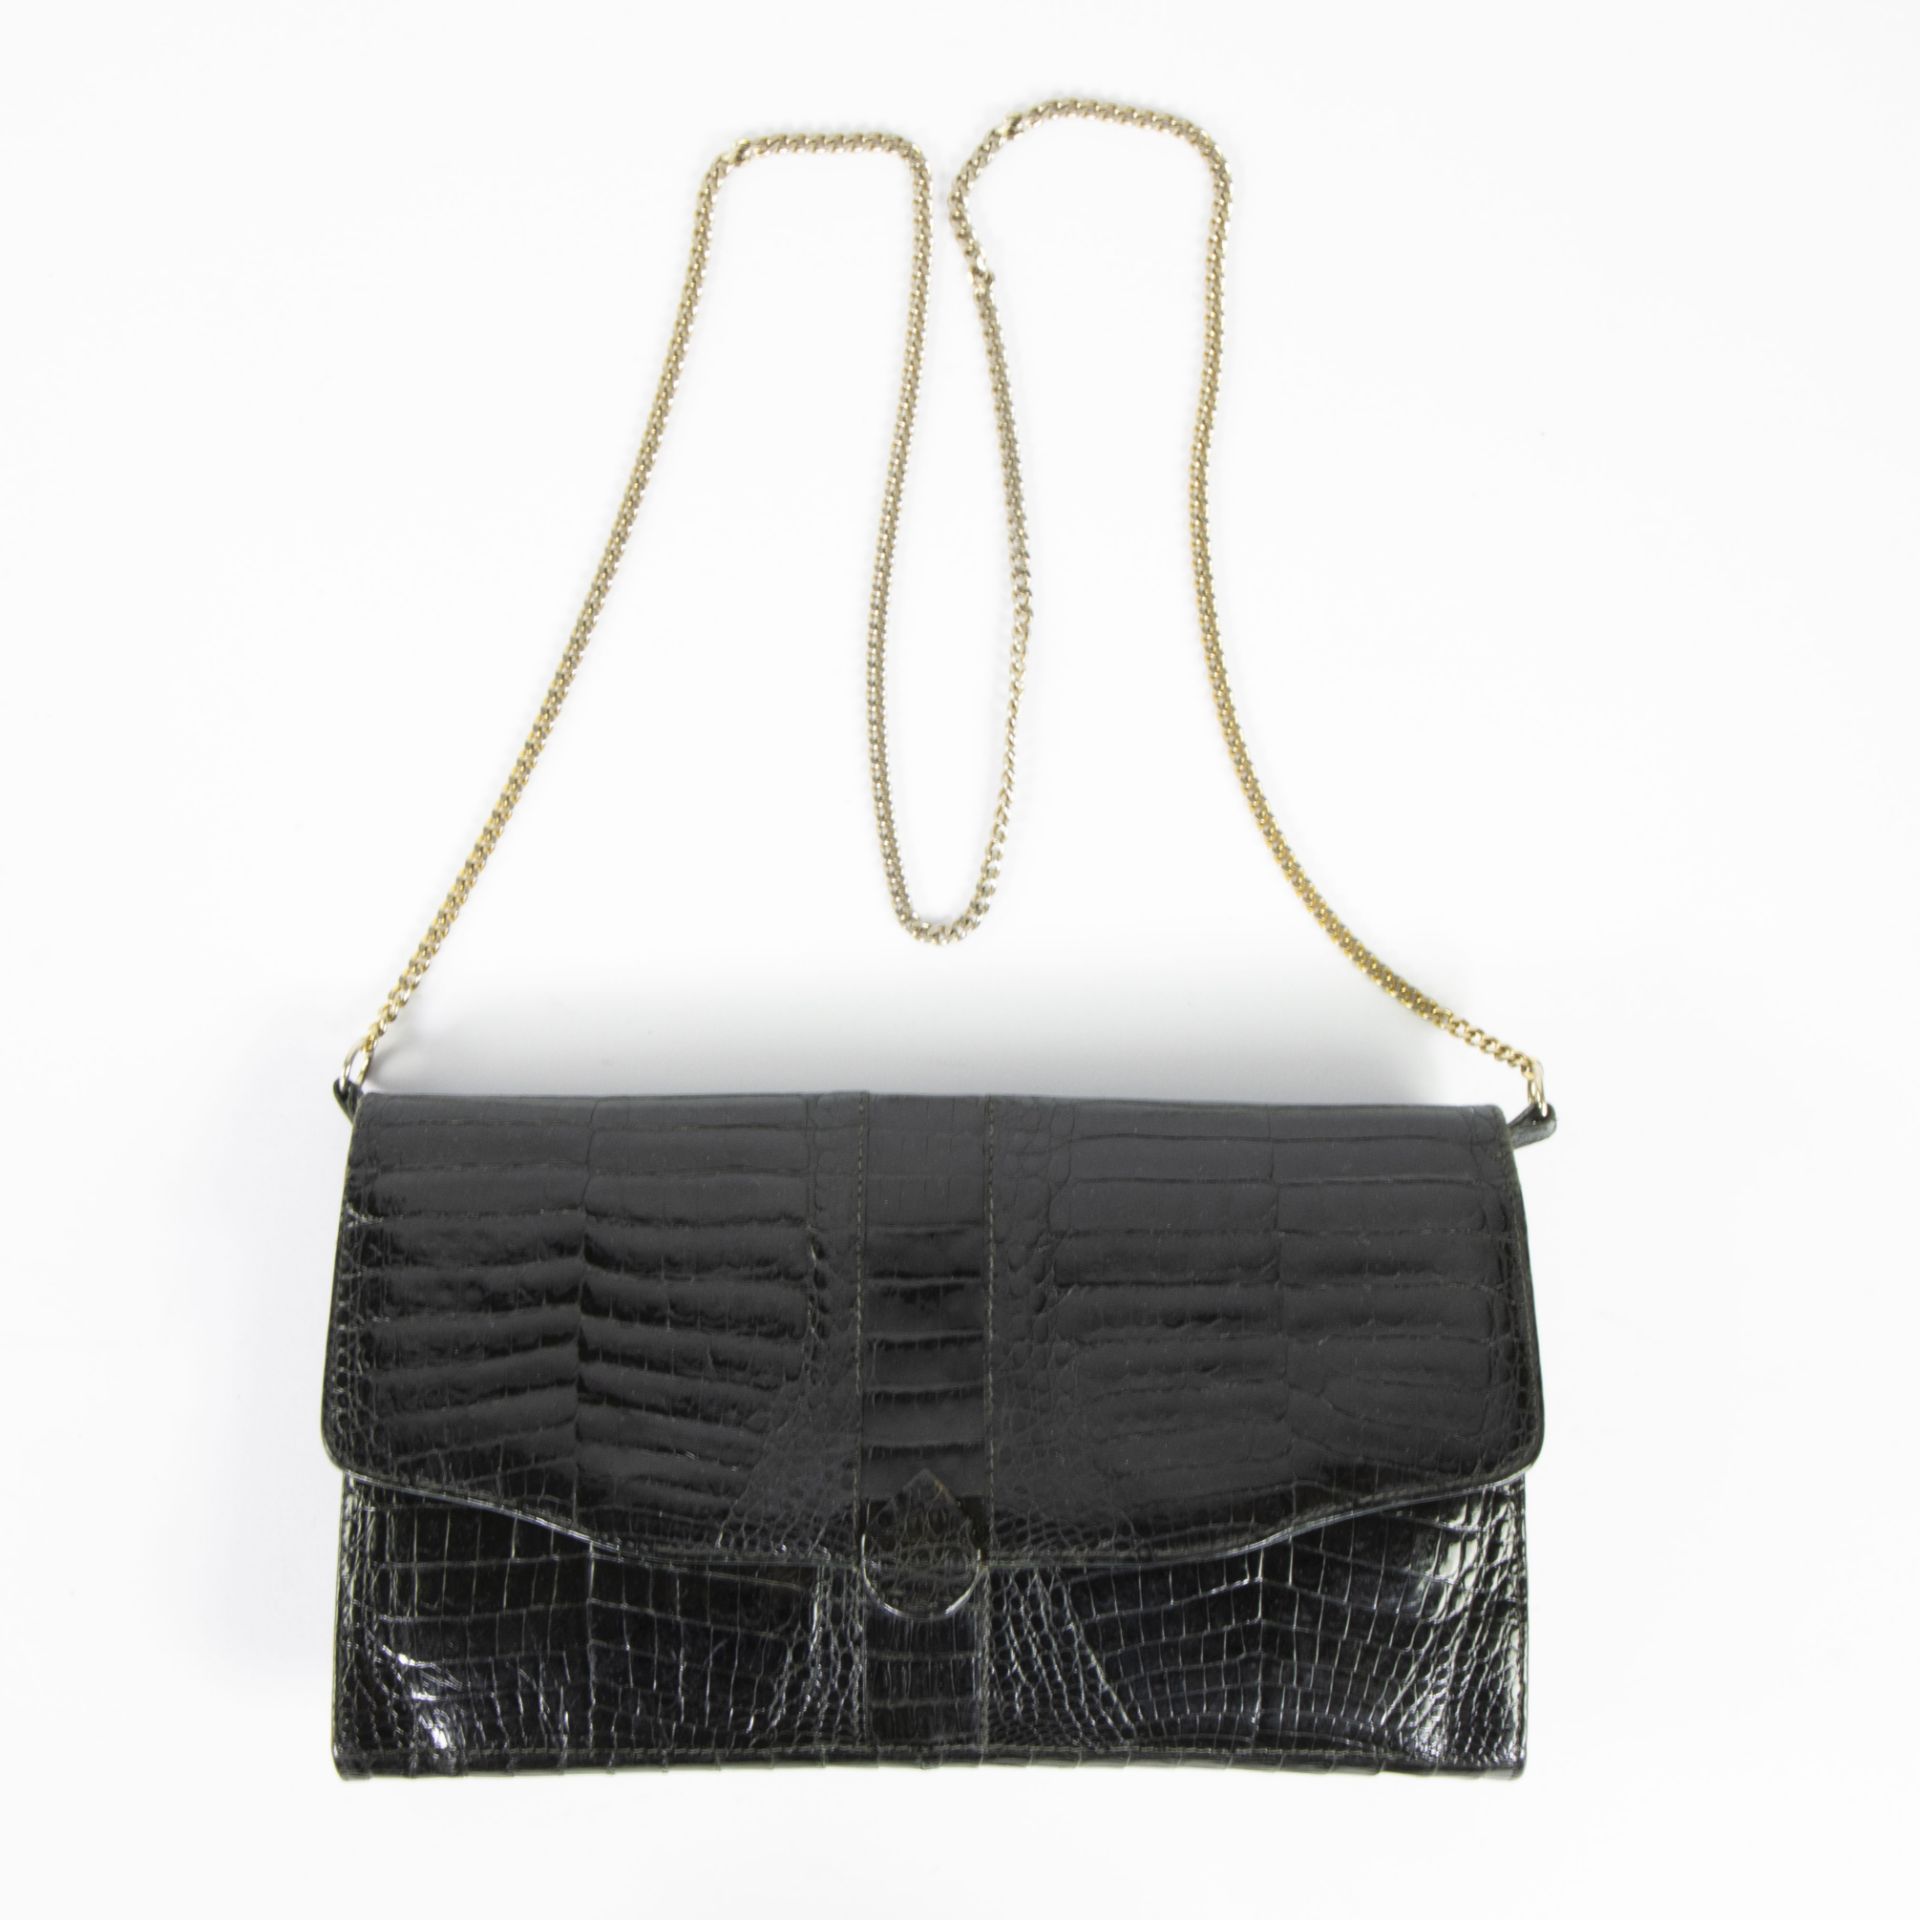 Black croco handbag